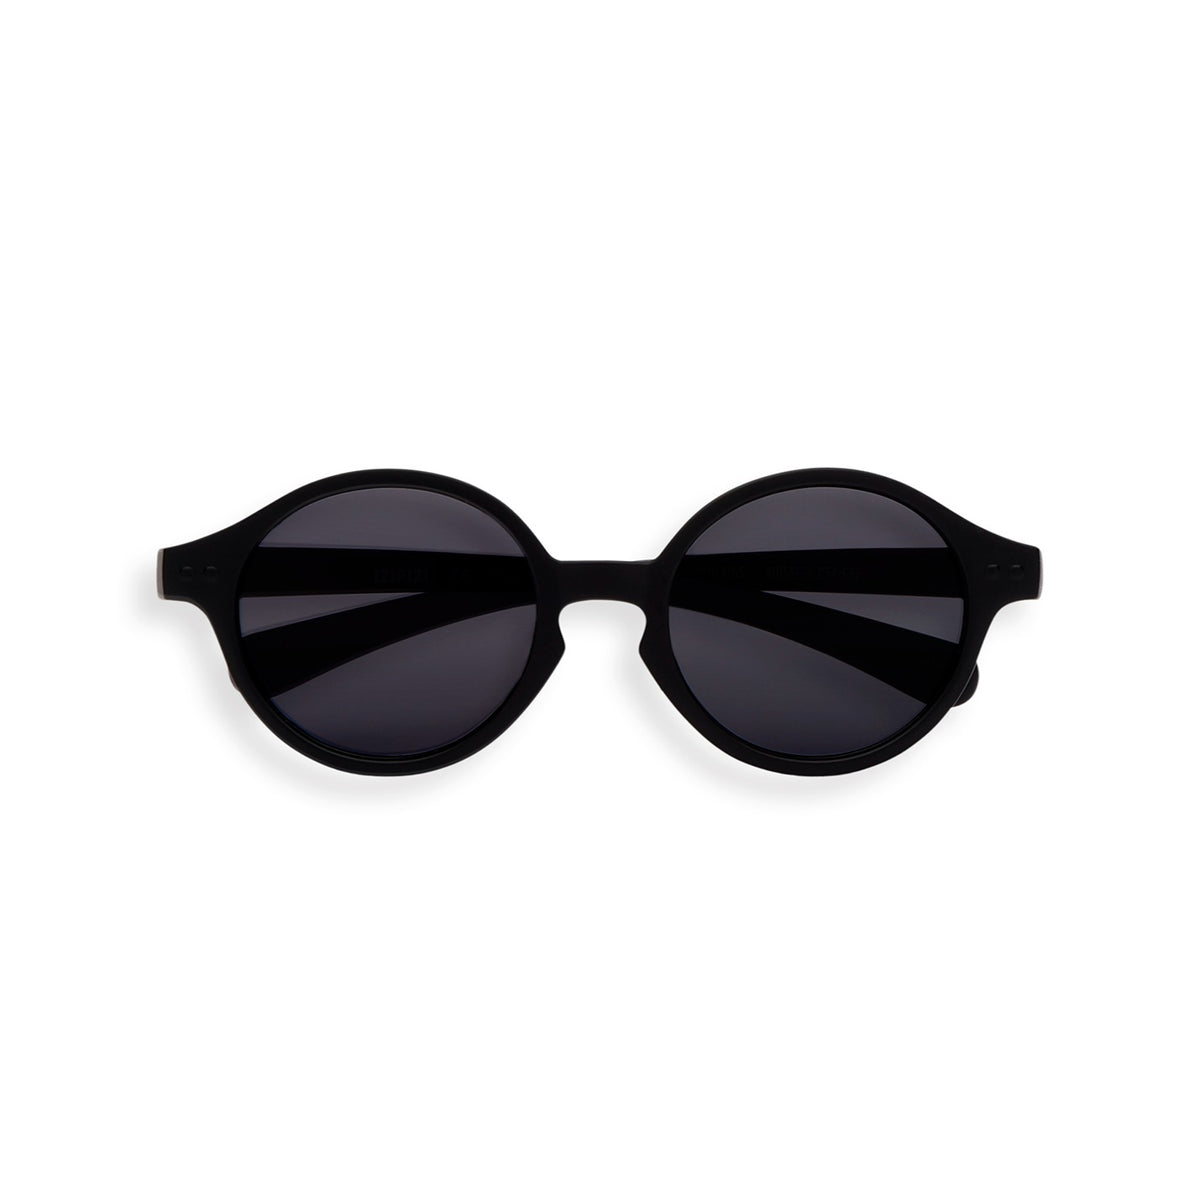 Kids Sonnenbrille #d 9-36M - schwarz